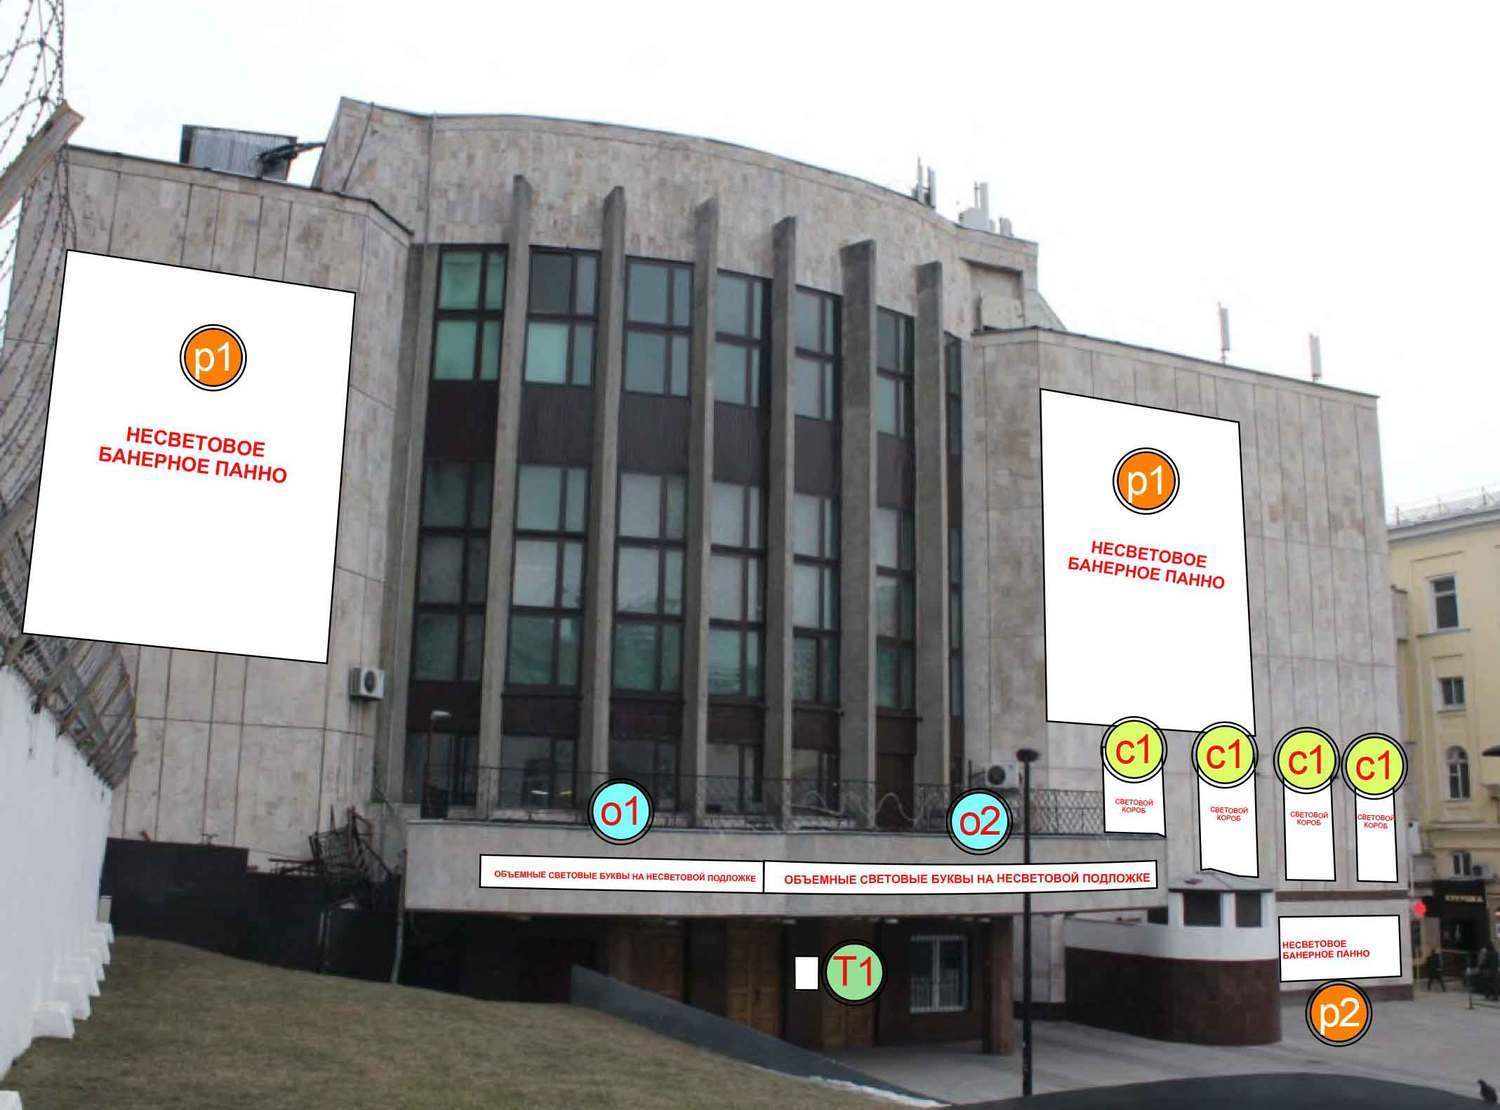 Согласовать наружную рекламу, согласование рекламной конструкции в Москве, согласовать стелу, вывески на ТЦ